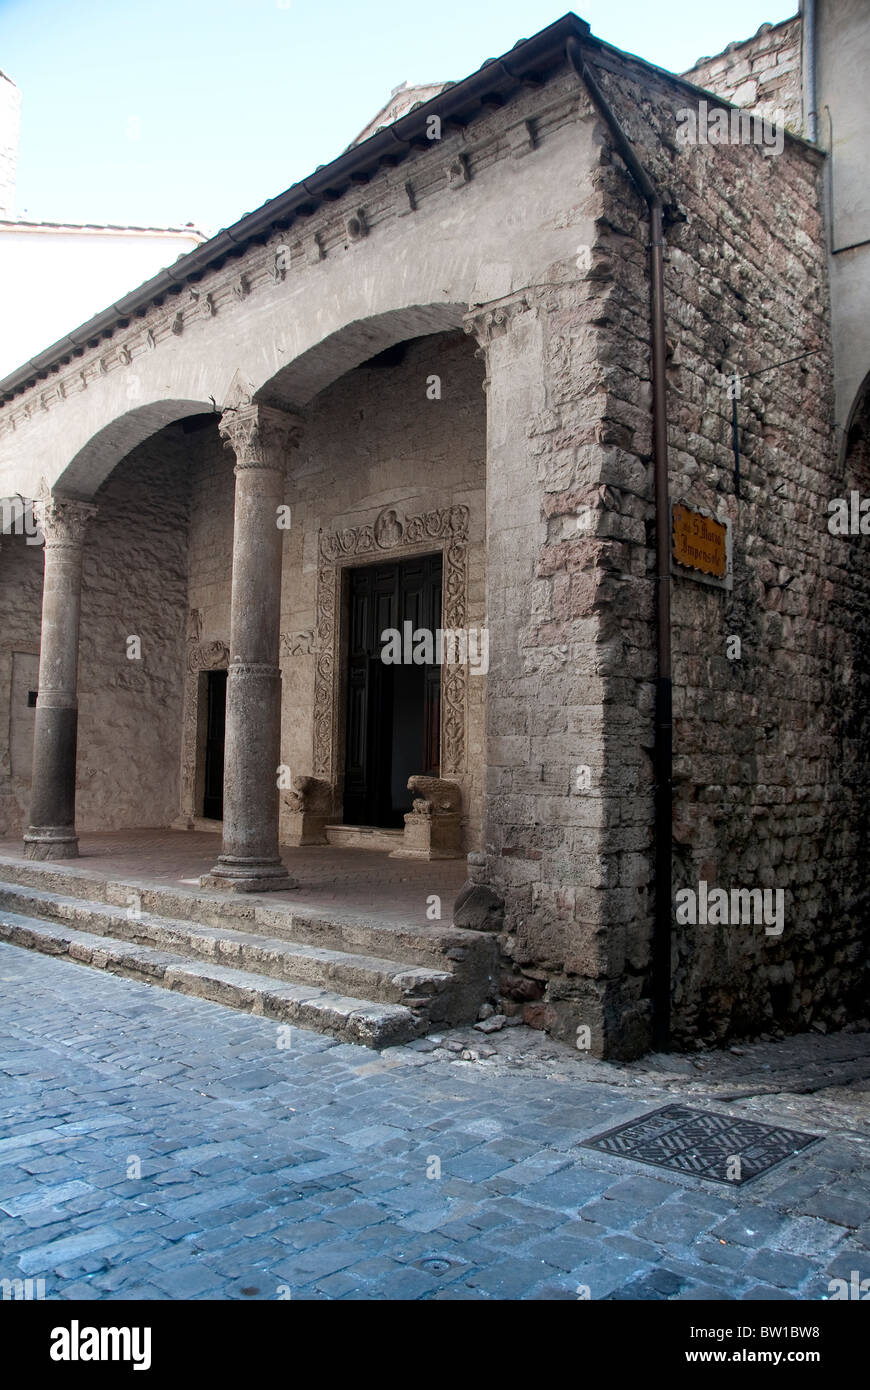 Facade of the 8th century Chiesa (Church) di Santa Maria Impensole, Narni, Umbria Stock Photo